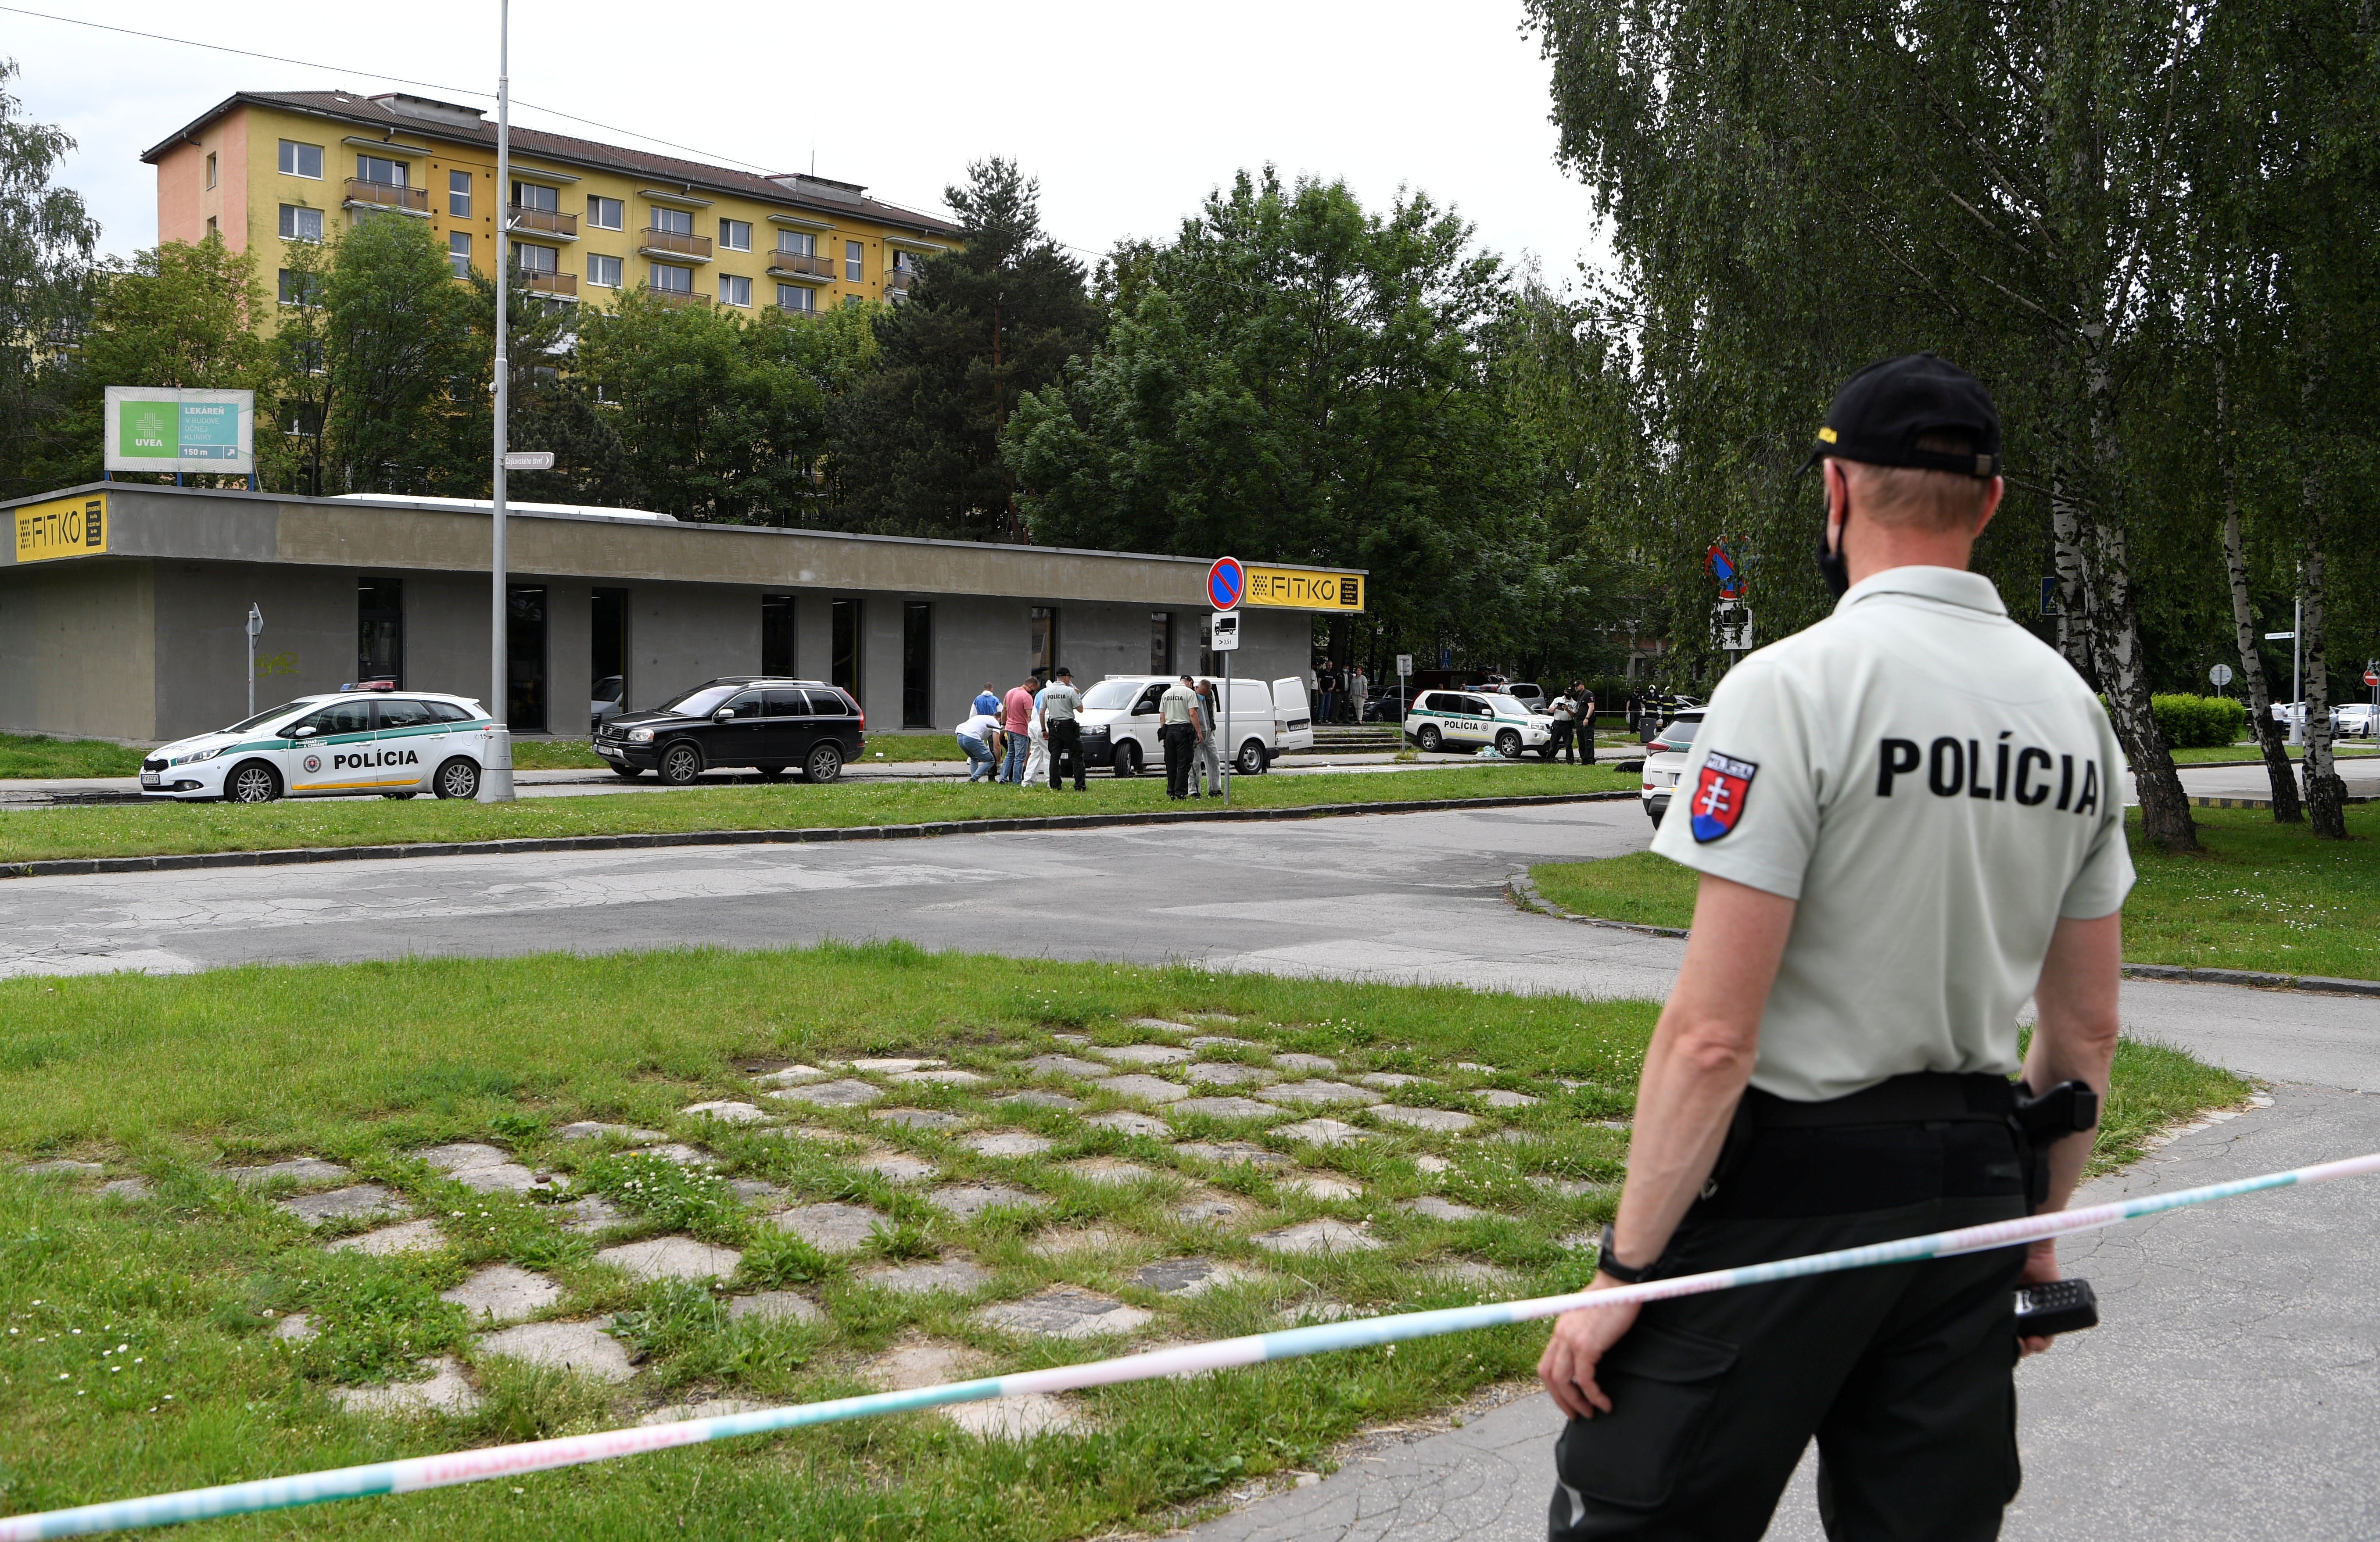 Un profesor muere apuñalado en una escuela en Eslovaquia (Fotos)